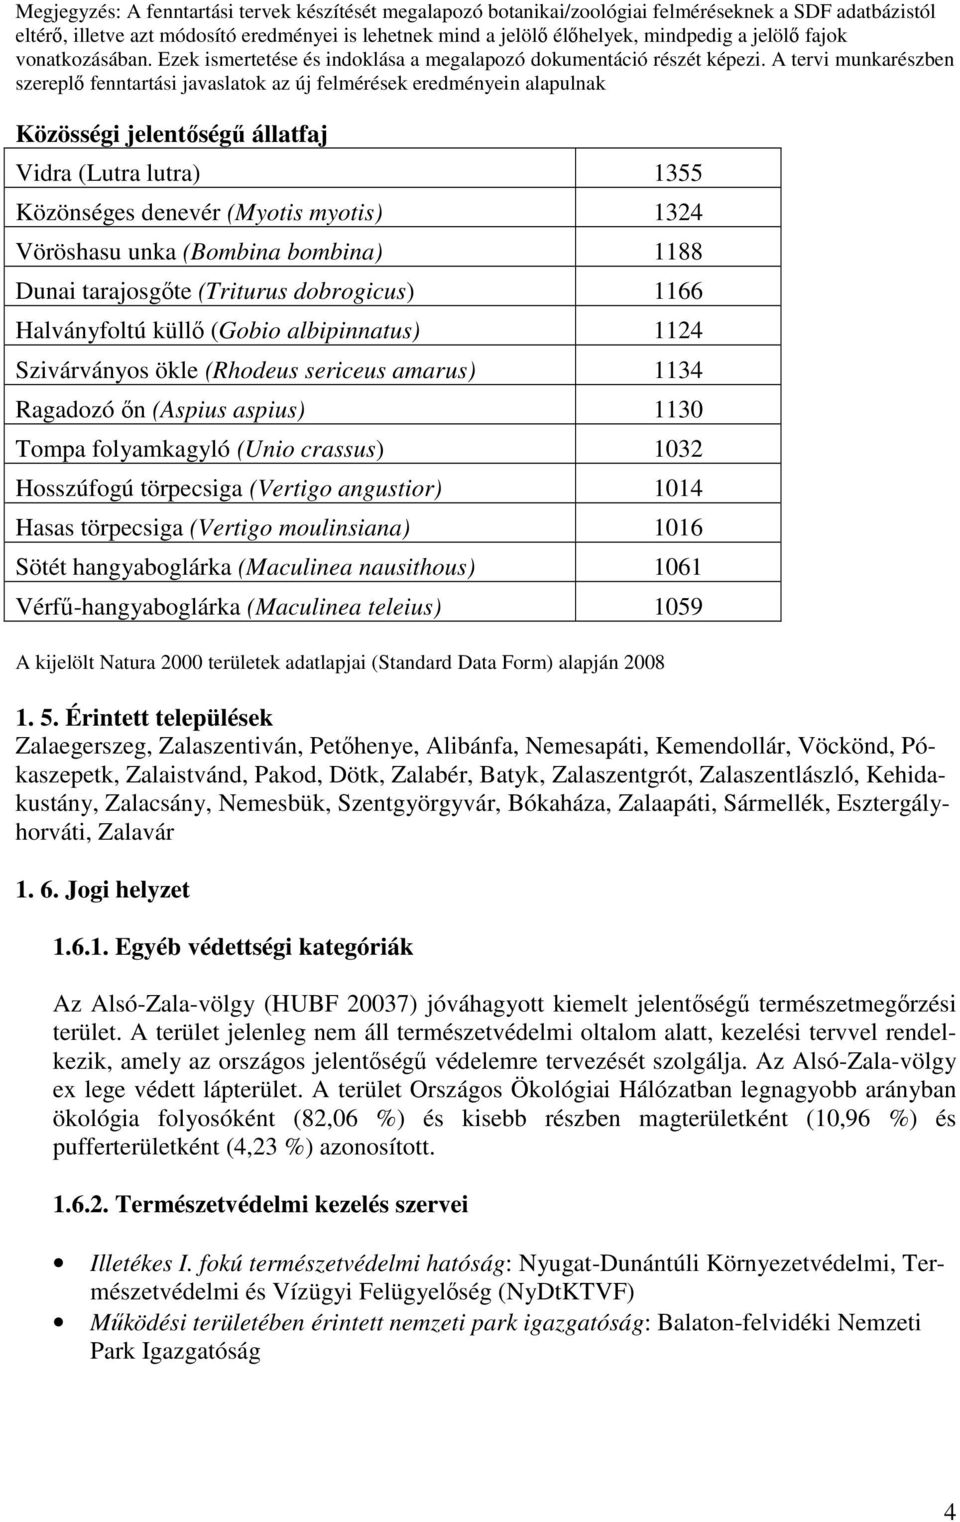 A tervi munkarészben szereplı fenntartási javaslatok az új felmérések eredményein alapulnak Közösségi jelentıségő állatfaj Vidra (Lutra lutra) 1355 Közönséges denevér (Myotis myotis) 1324 Vöröshasu